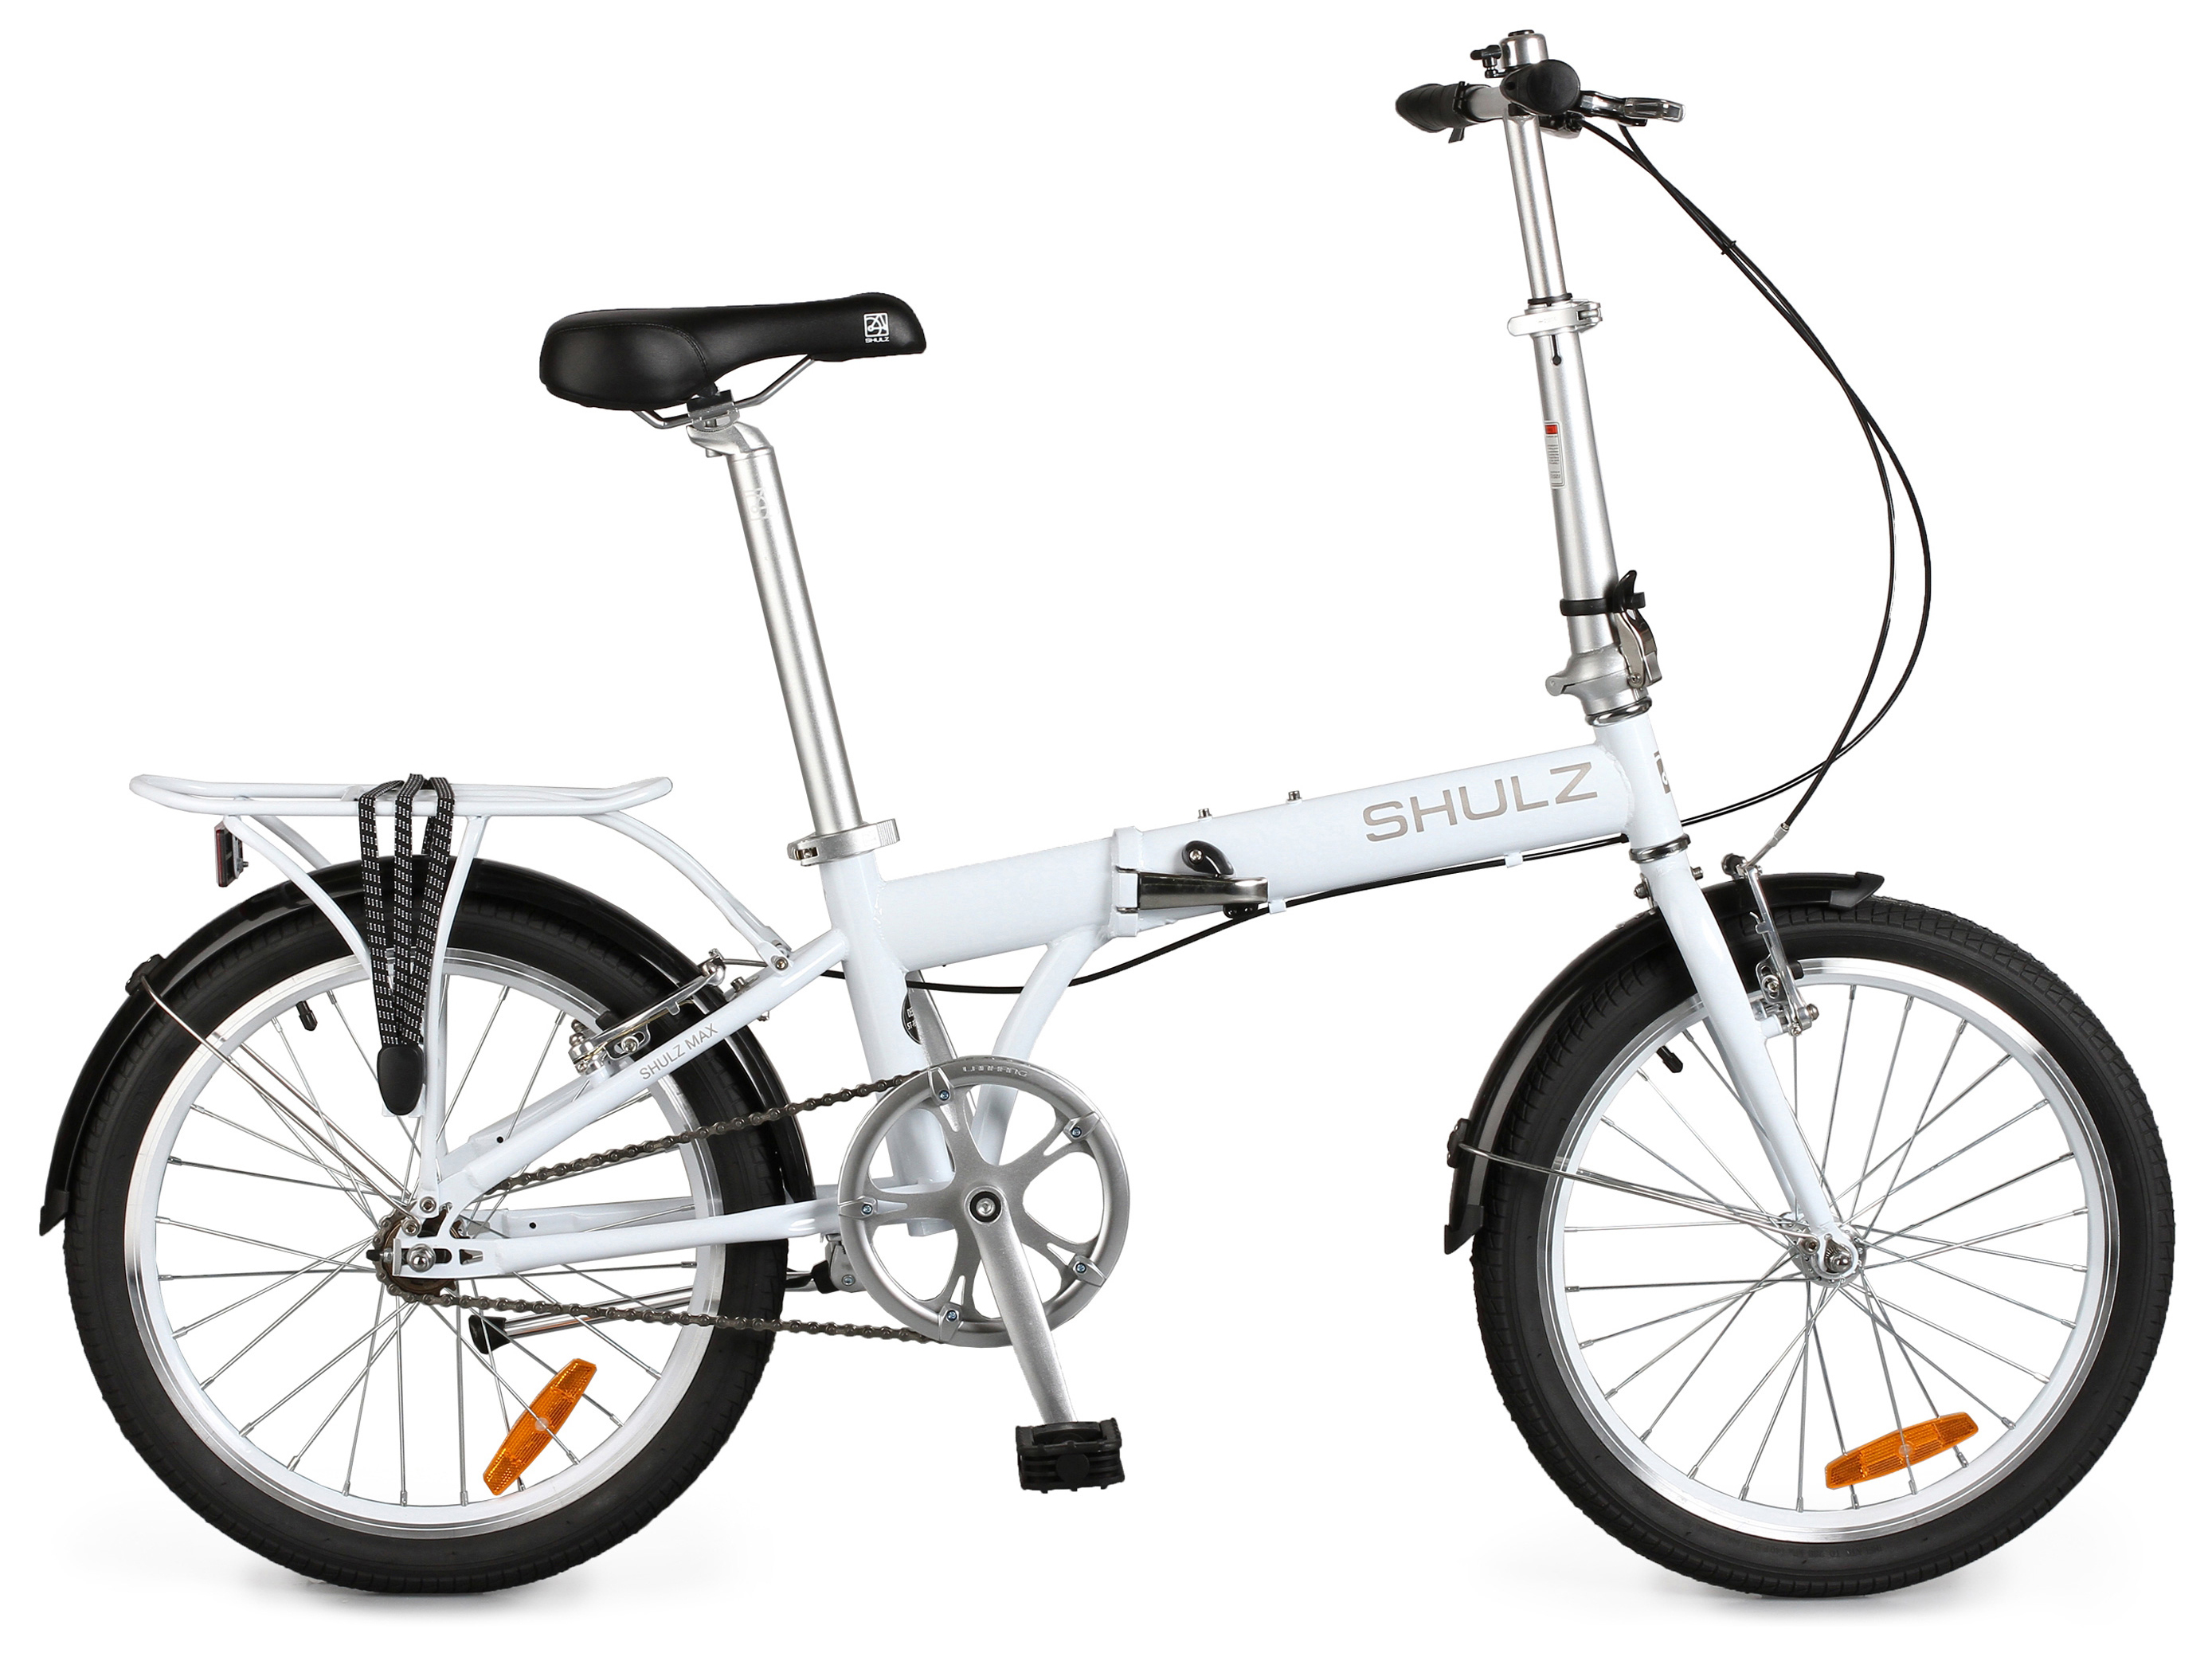  Отзывы о Складном велосипеде Shulz Max 2020